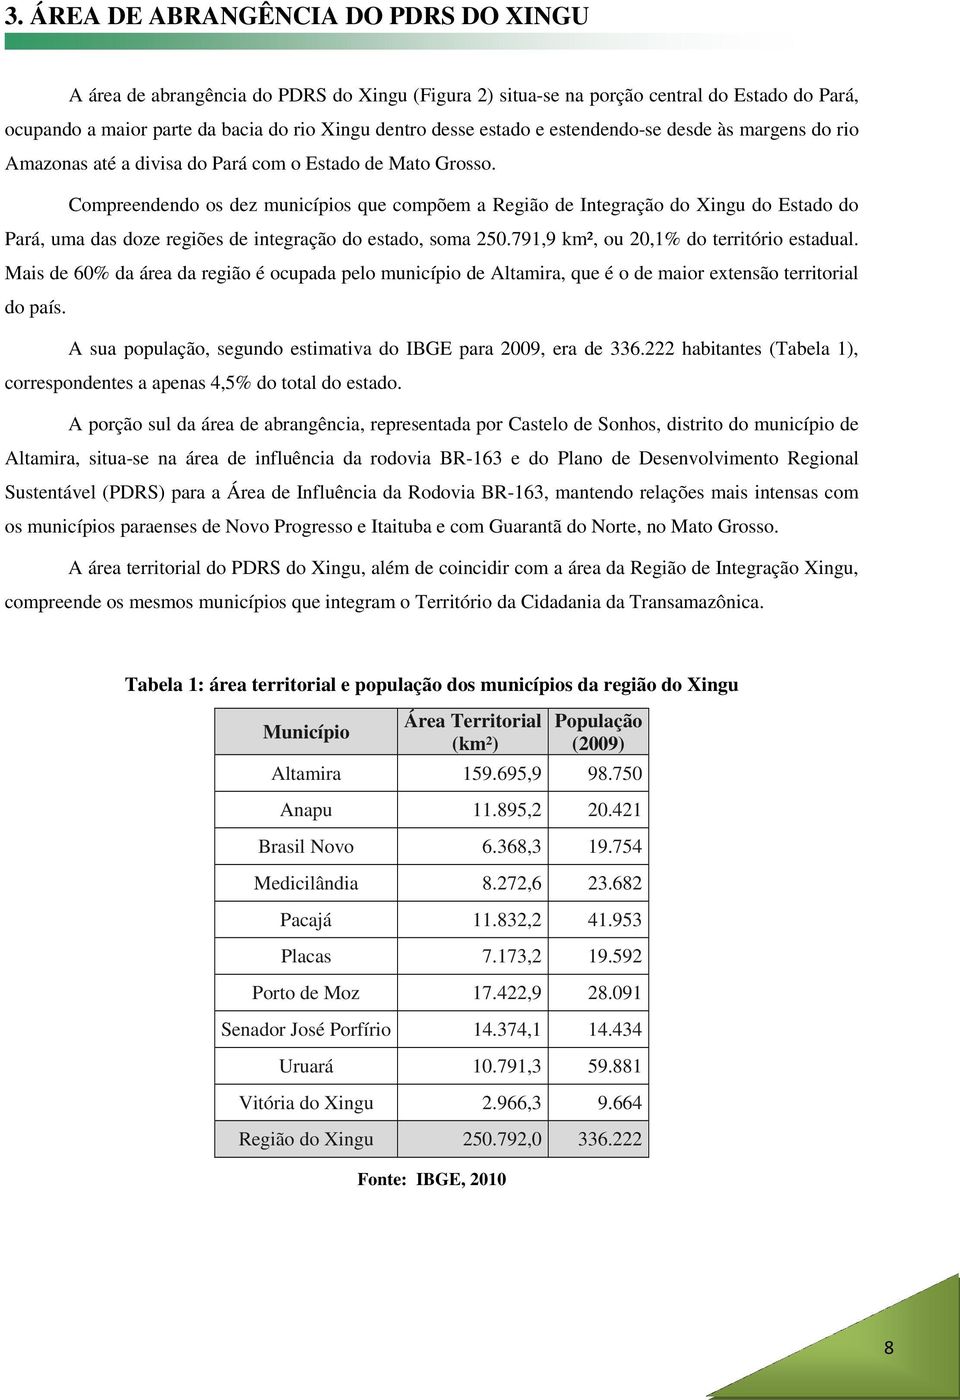 Compreendendo os dez municípios que compõem a Região de Integração do Xingu do Estado do Pará, uma das doze regiões de integração do estado, soma 250.791,9 km², ou 20,1% do território estadual.